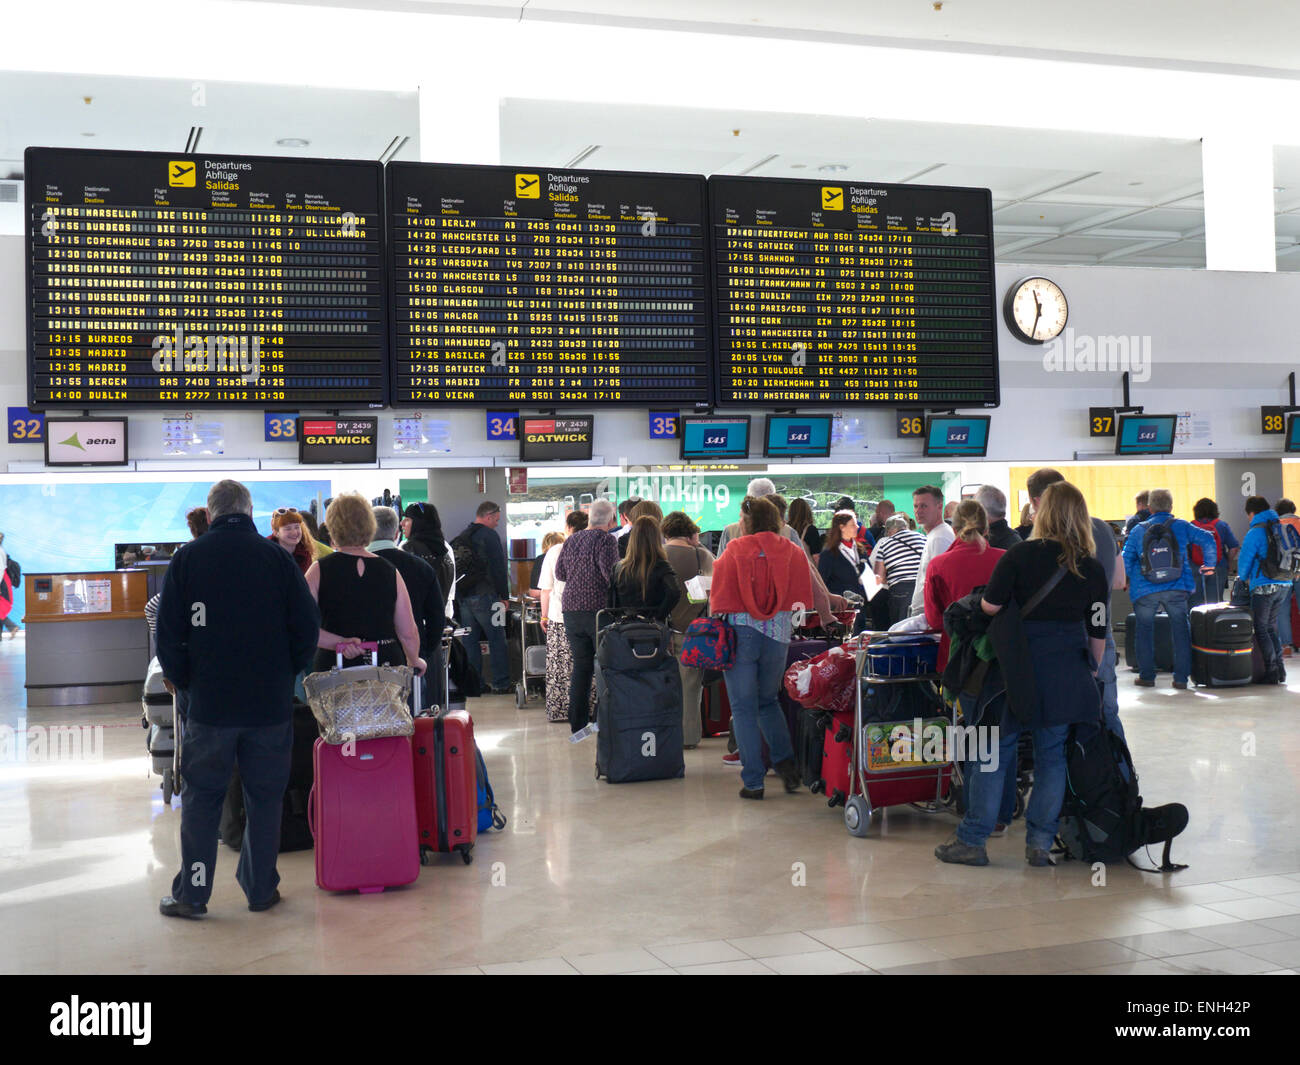 Aeroporto Spagna schermate informative e code di passeggeri e bagagli delle compagnie aeree aspettano sul atrio dell'aeroporto per effettuare il check-in al volo Foto Stock